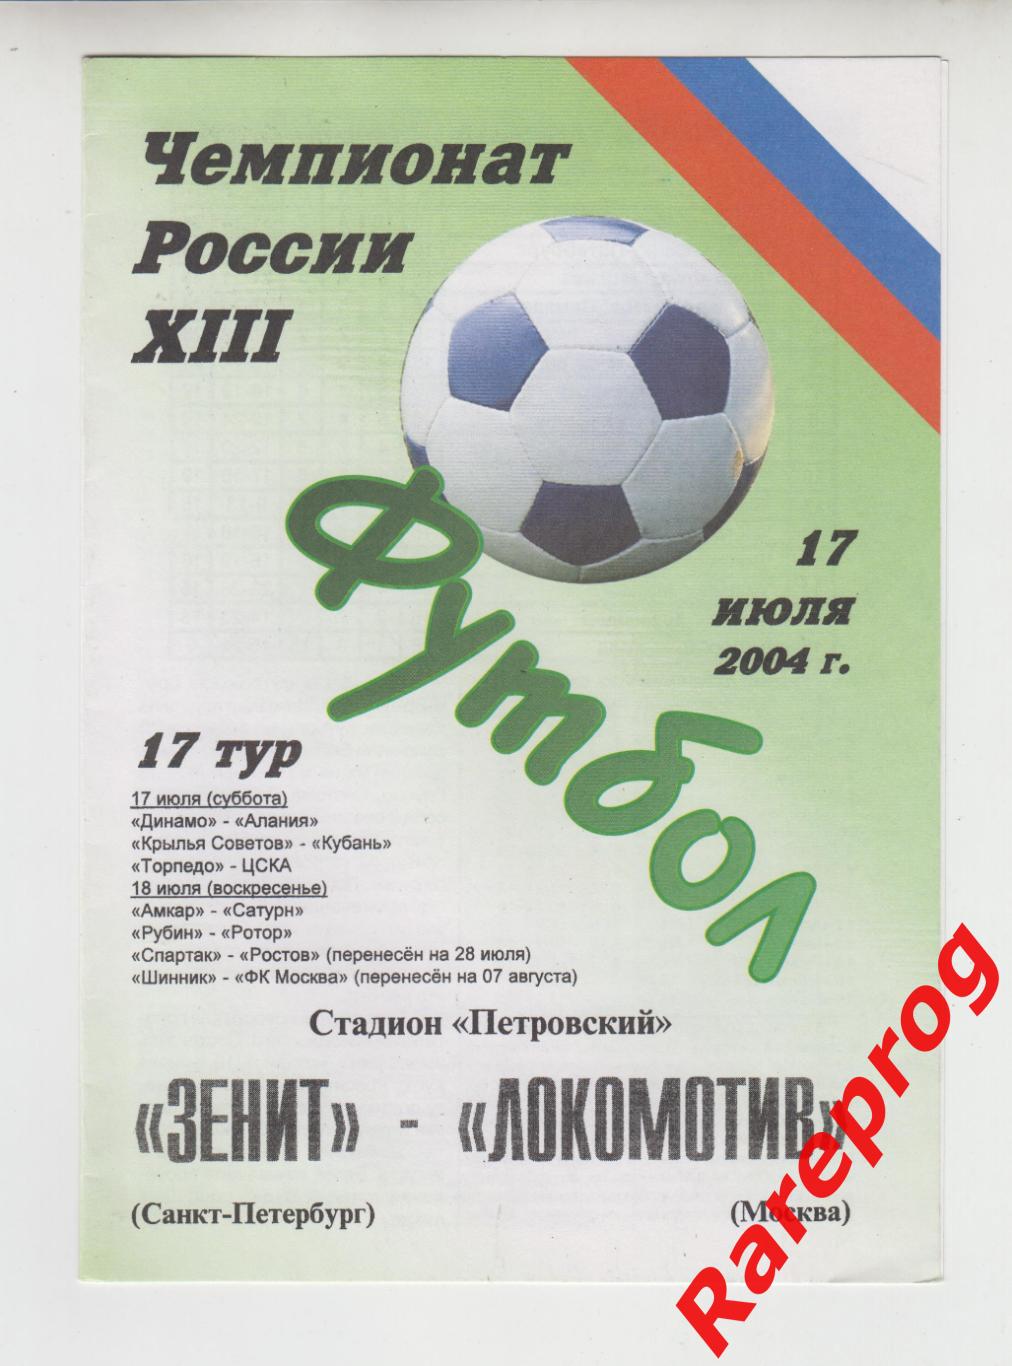 Зенит Санкт-Петербург - Локомотив Москва 2004